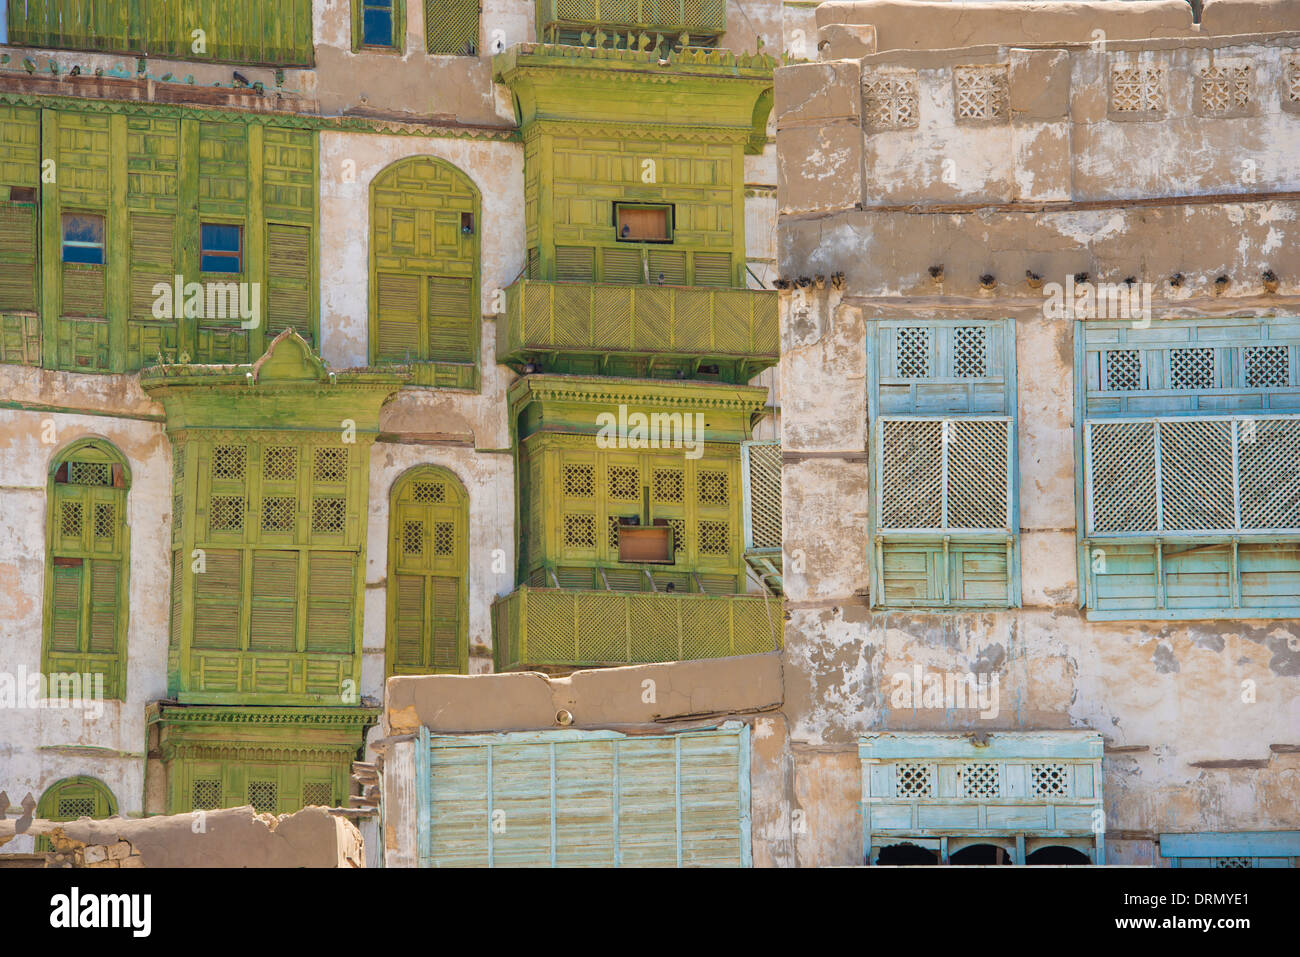 Détail des bâtiments en Al-Balad (vieille ville) Jeddah, Arabie saoudite Site du patrimoine mondial de l'UNESCO Banque D'Images